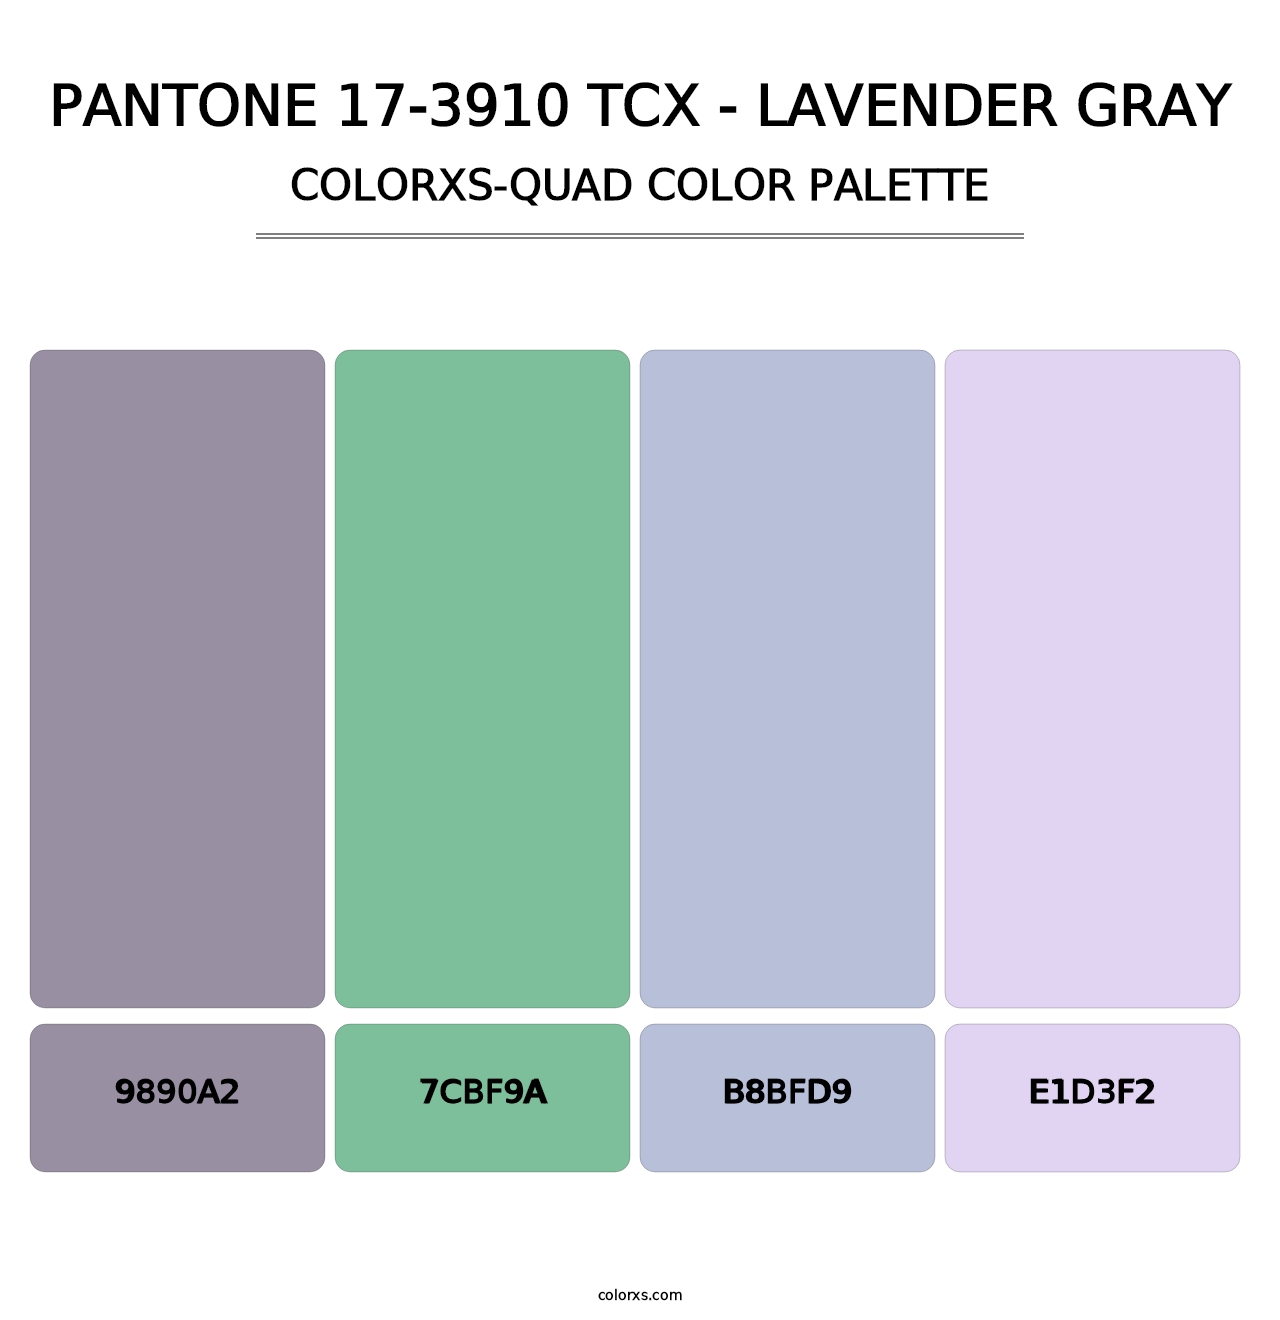 PANTONE 17-3910 TCX - Lavender Gray - Colorxs Quad Palette